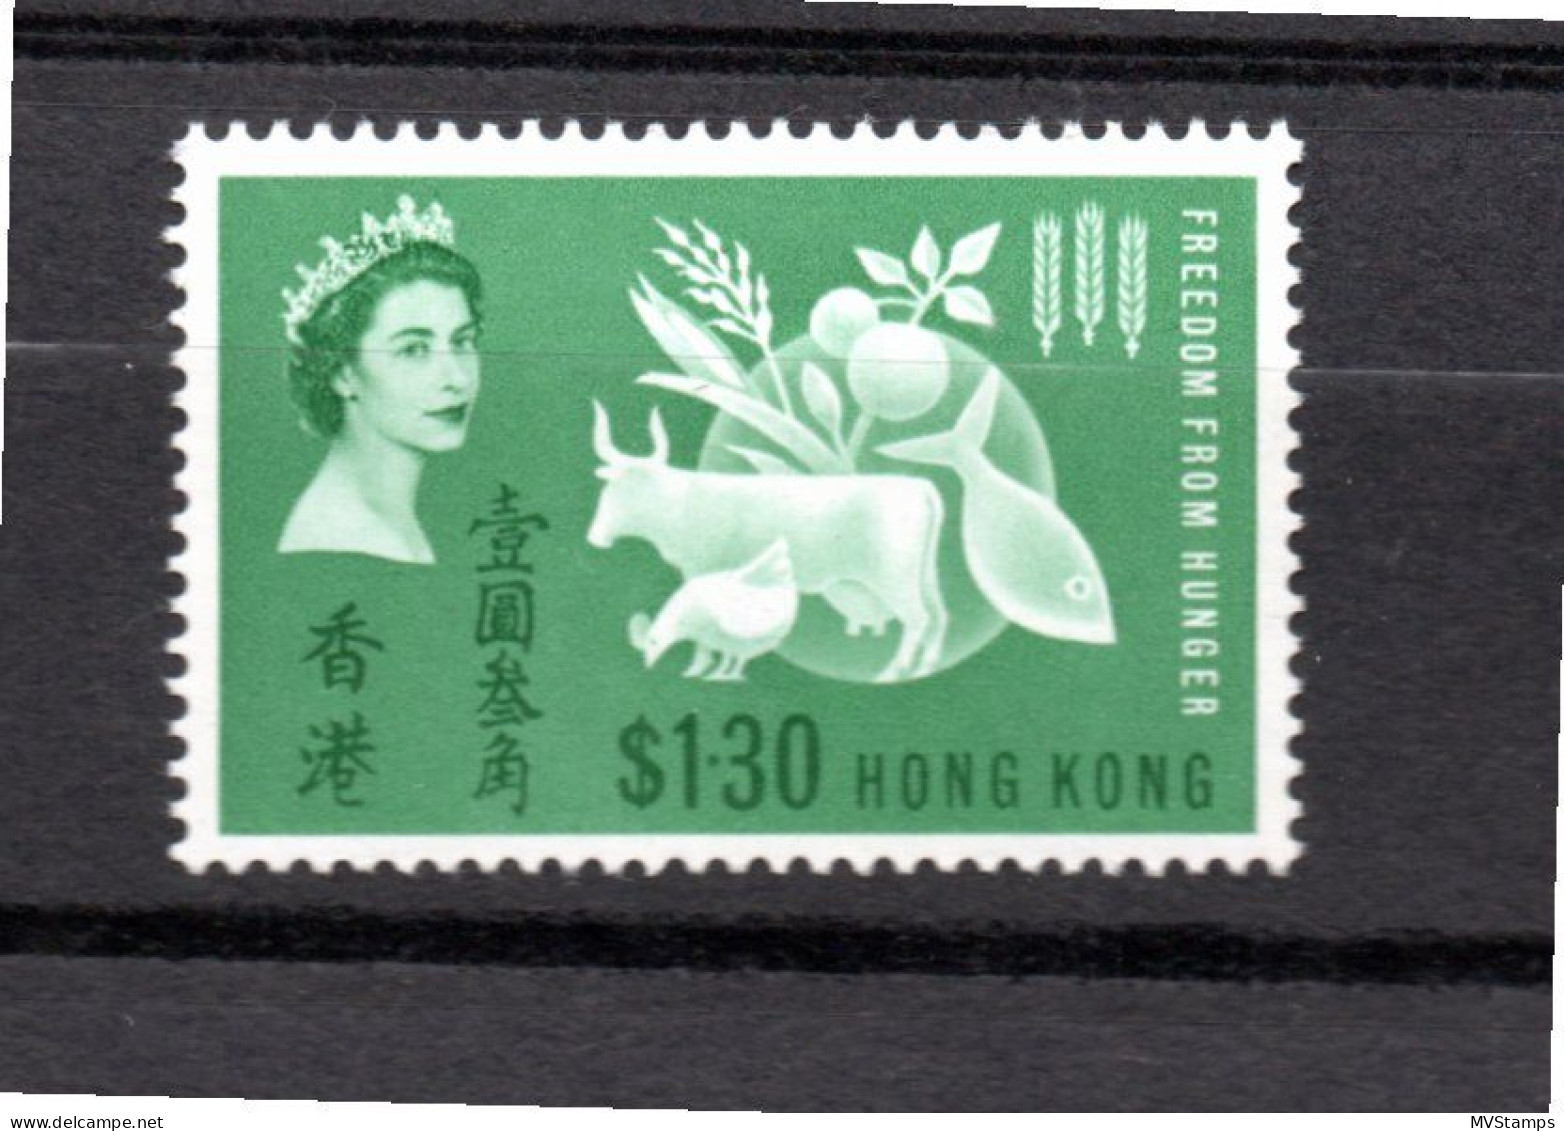 Hong Kong 1963 Hunger/Cow $1.30 Stamp (Michel 211) MNH - Neufs